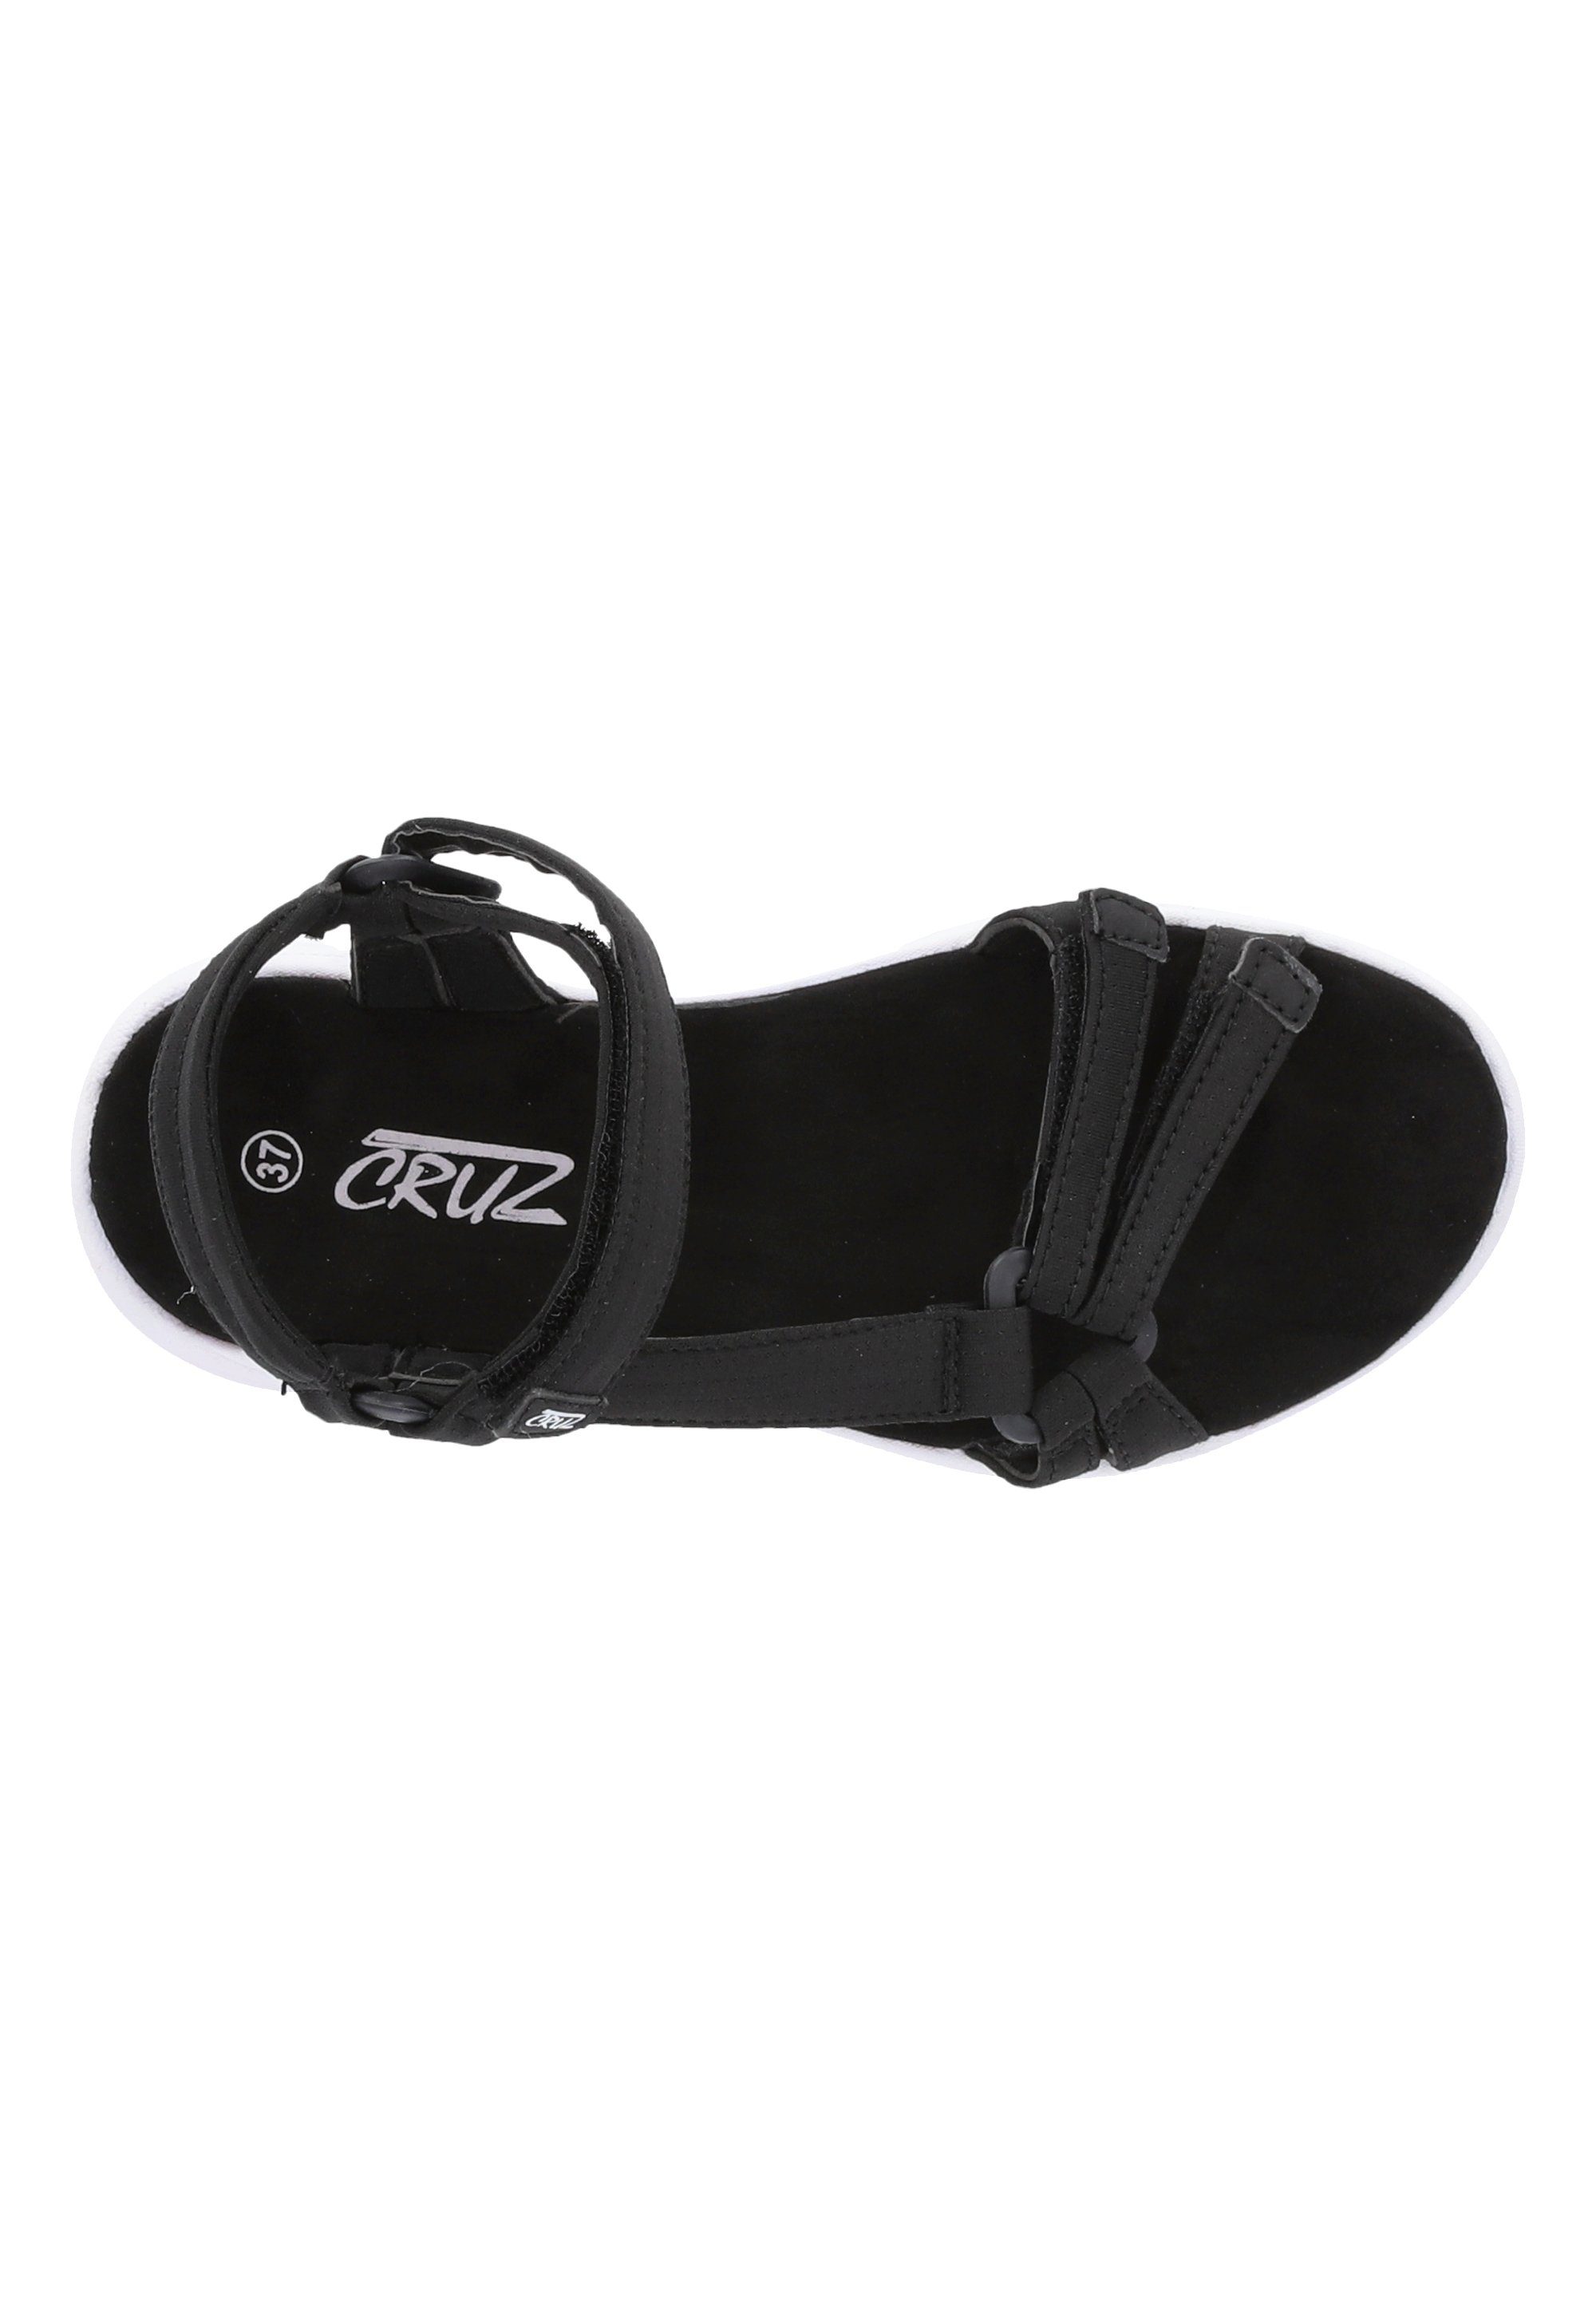 schwarz Bernao CRUZ Sandale mit Allwetterprofil rutschfestem